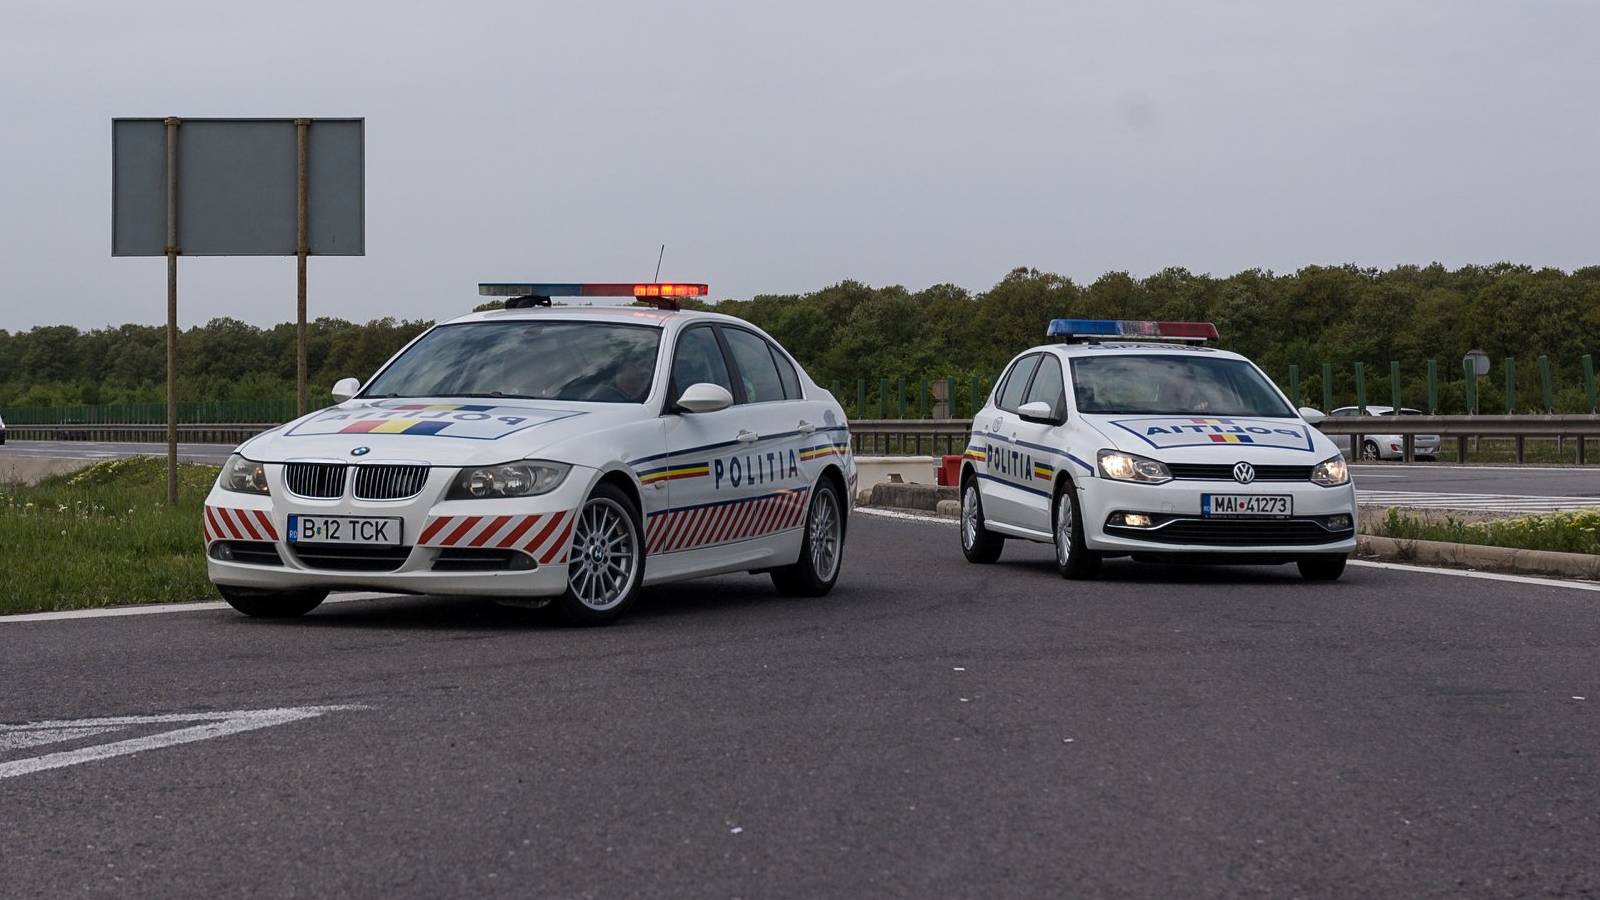 Warnung der rumänischen Polizei an rumänische Autofahrer